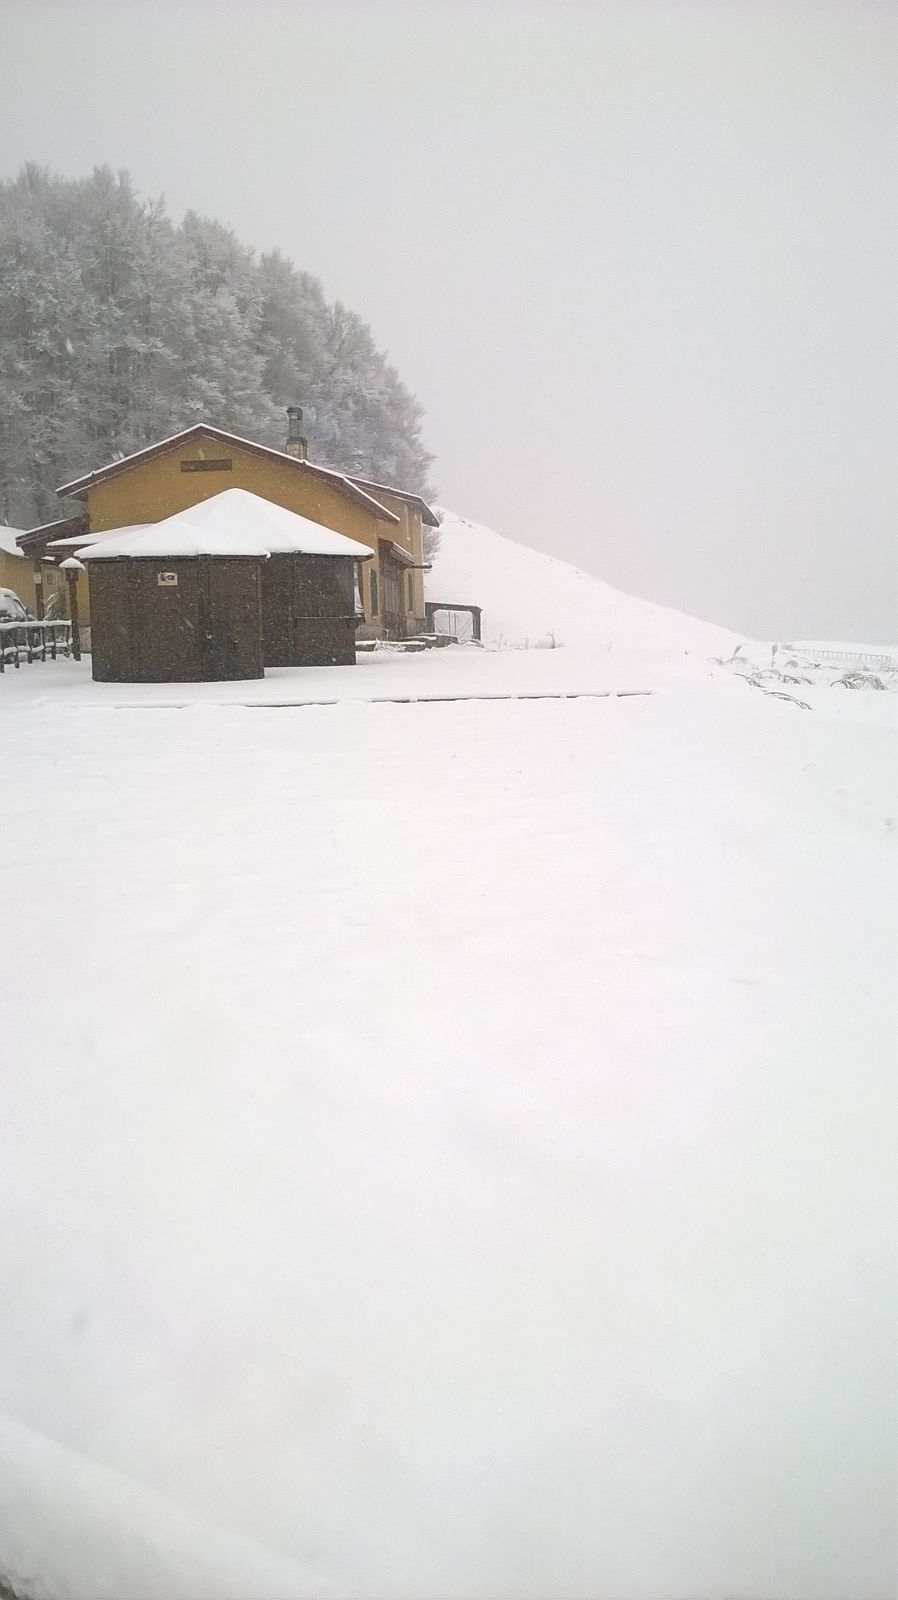 Nevicate moderate sul Pollino: le foto